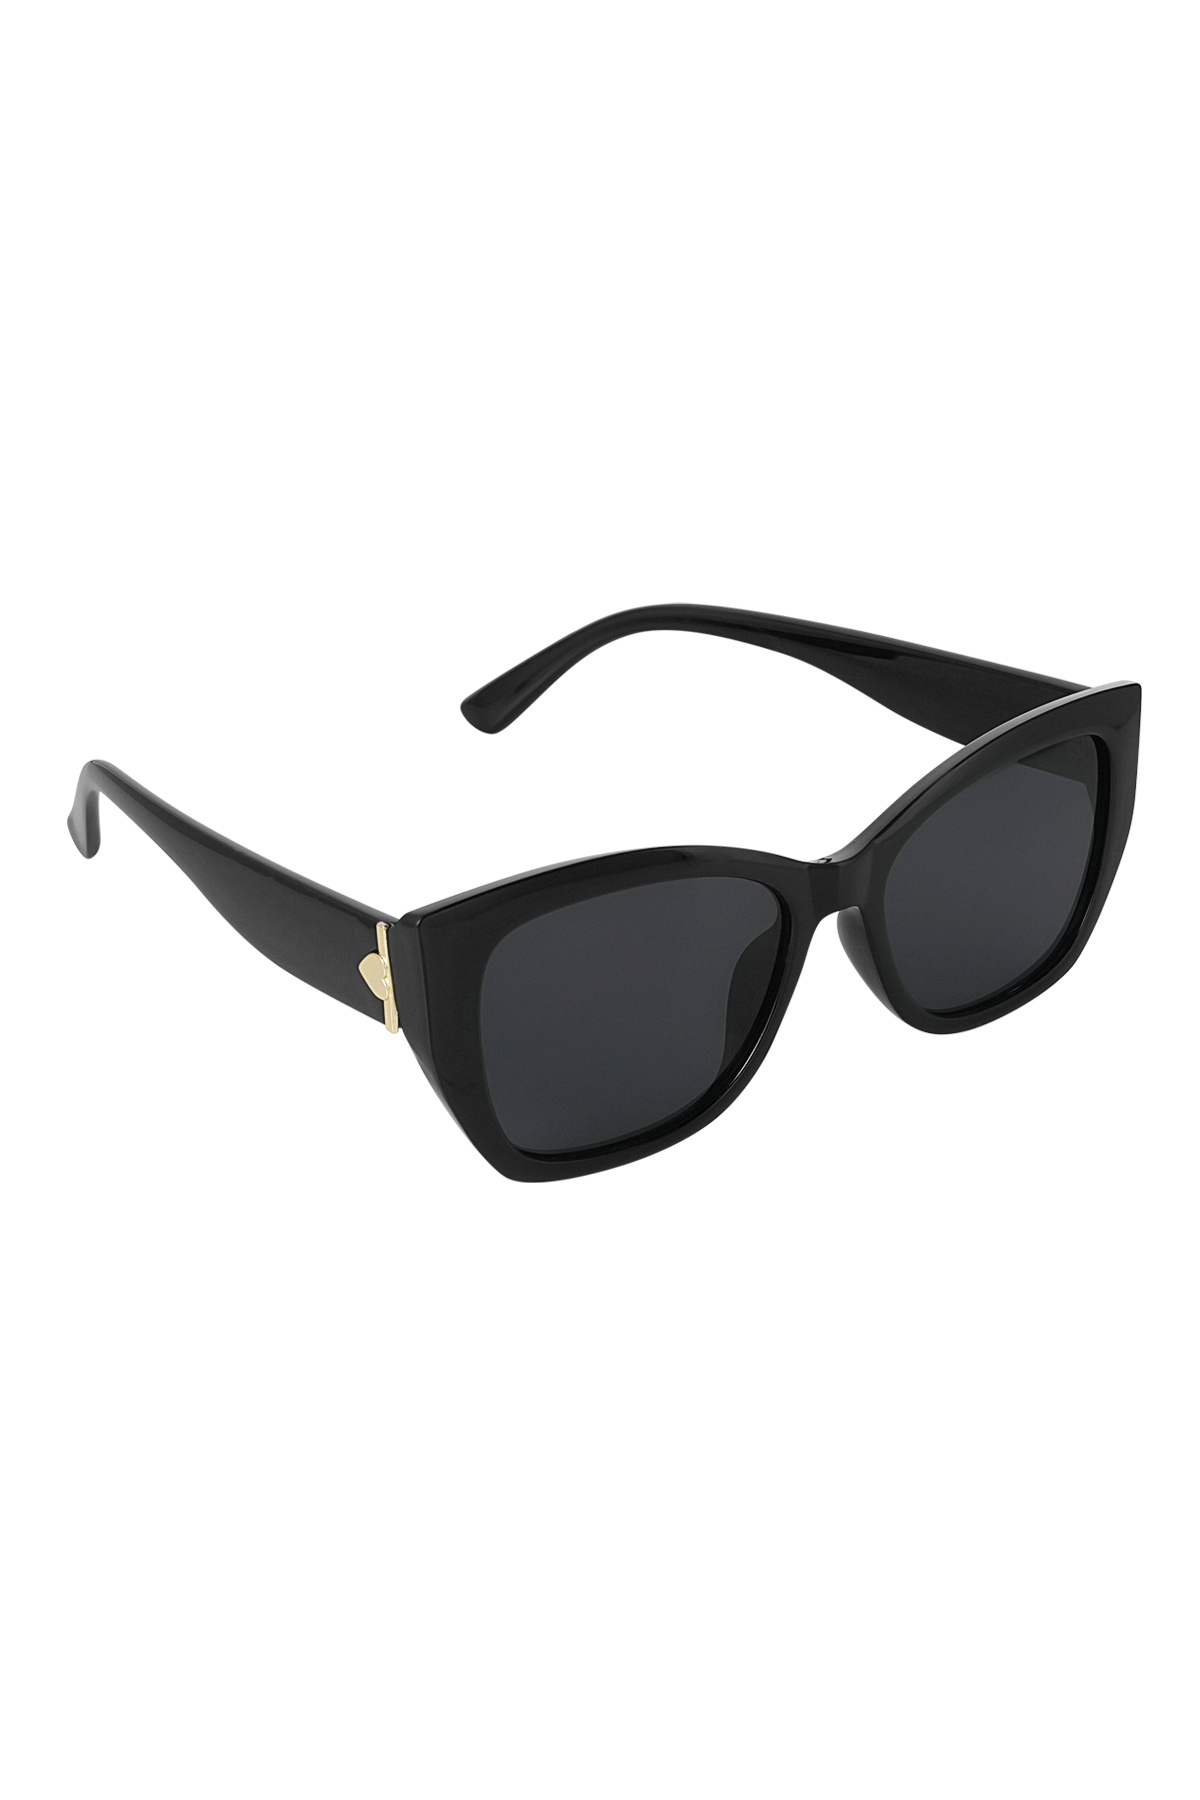 Basic-Sonnenbrille - schwarz PC One size